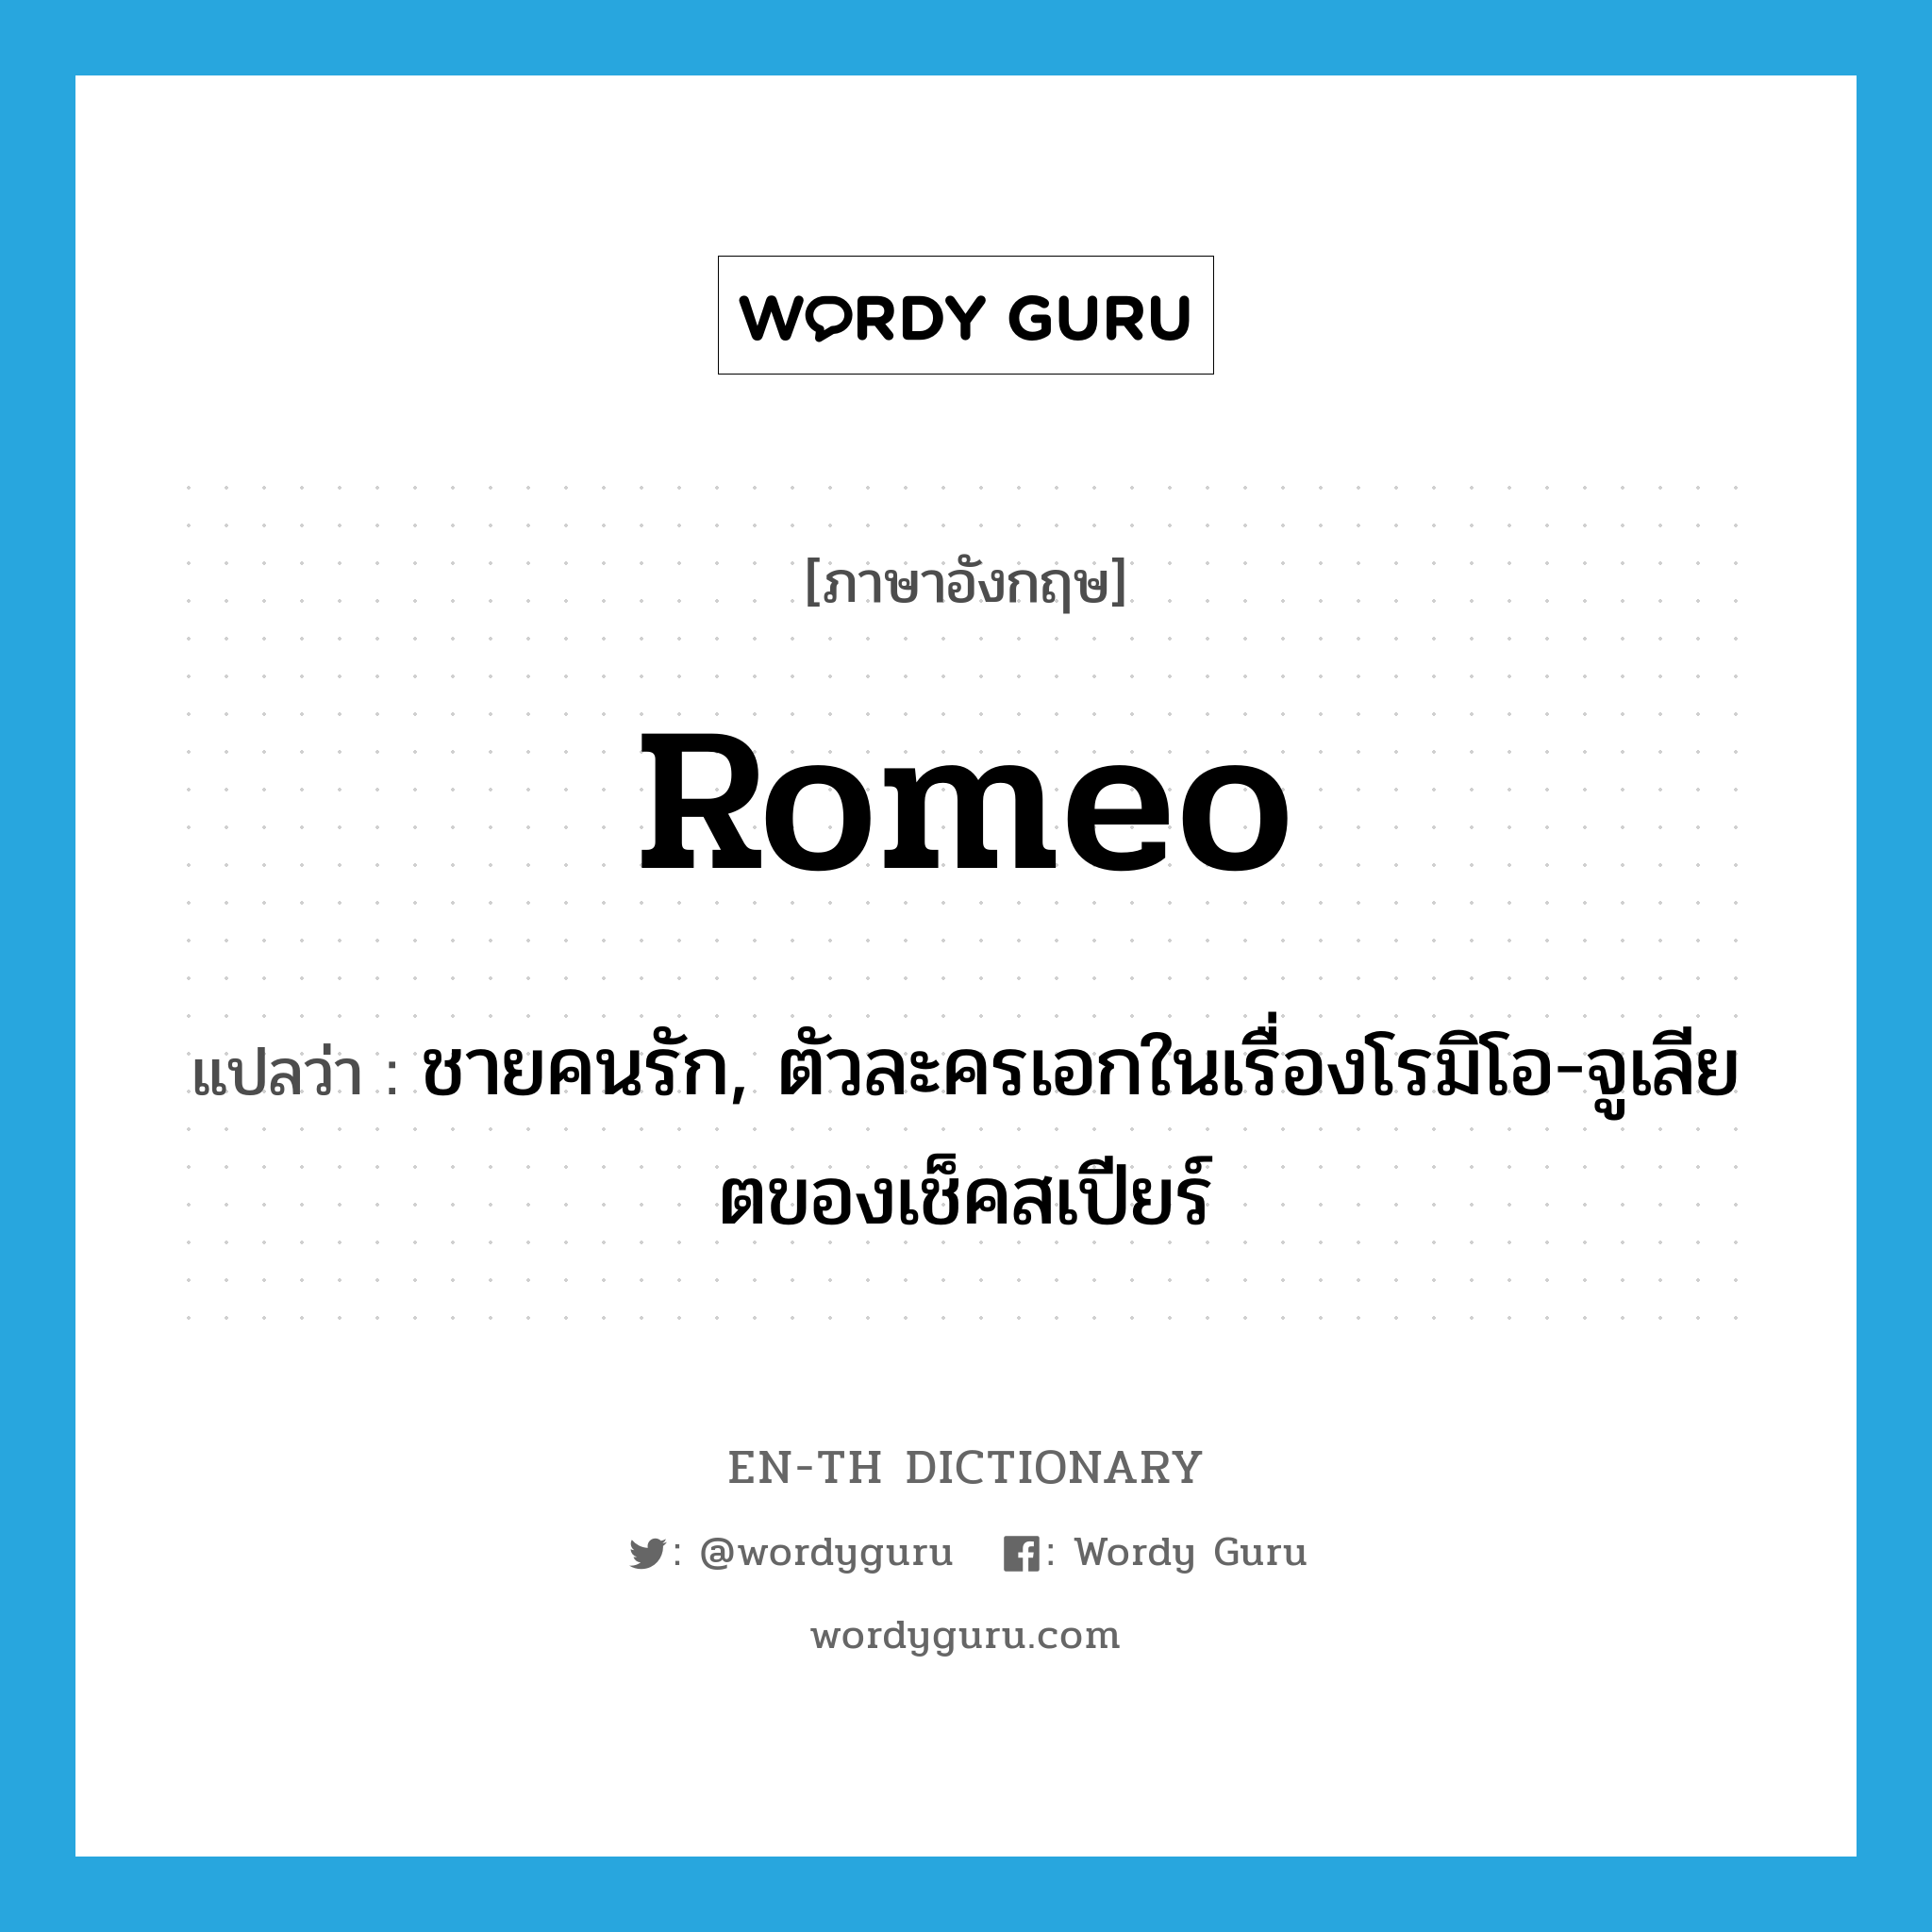 ชายคนรัก, ตัวละครเอกในเรื่องโรมิโอ-จูเลียตของเช็คสเปียร์ ภาษาอังกฤษ?, คำศัพท์ภาษาอังกฤษ ชายคนรัก, ตัวละครเอกในเรื่องโรมิโอ-จูเลียตของเช็คสเปียร์ แปลว่า Romeo ประเภท N หมวด N